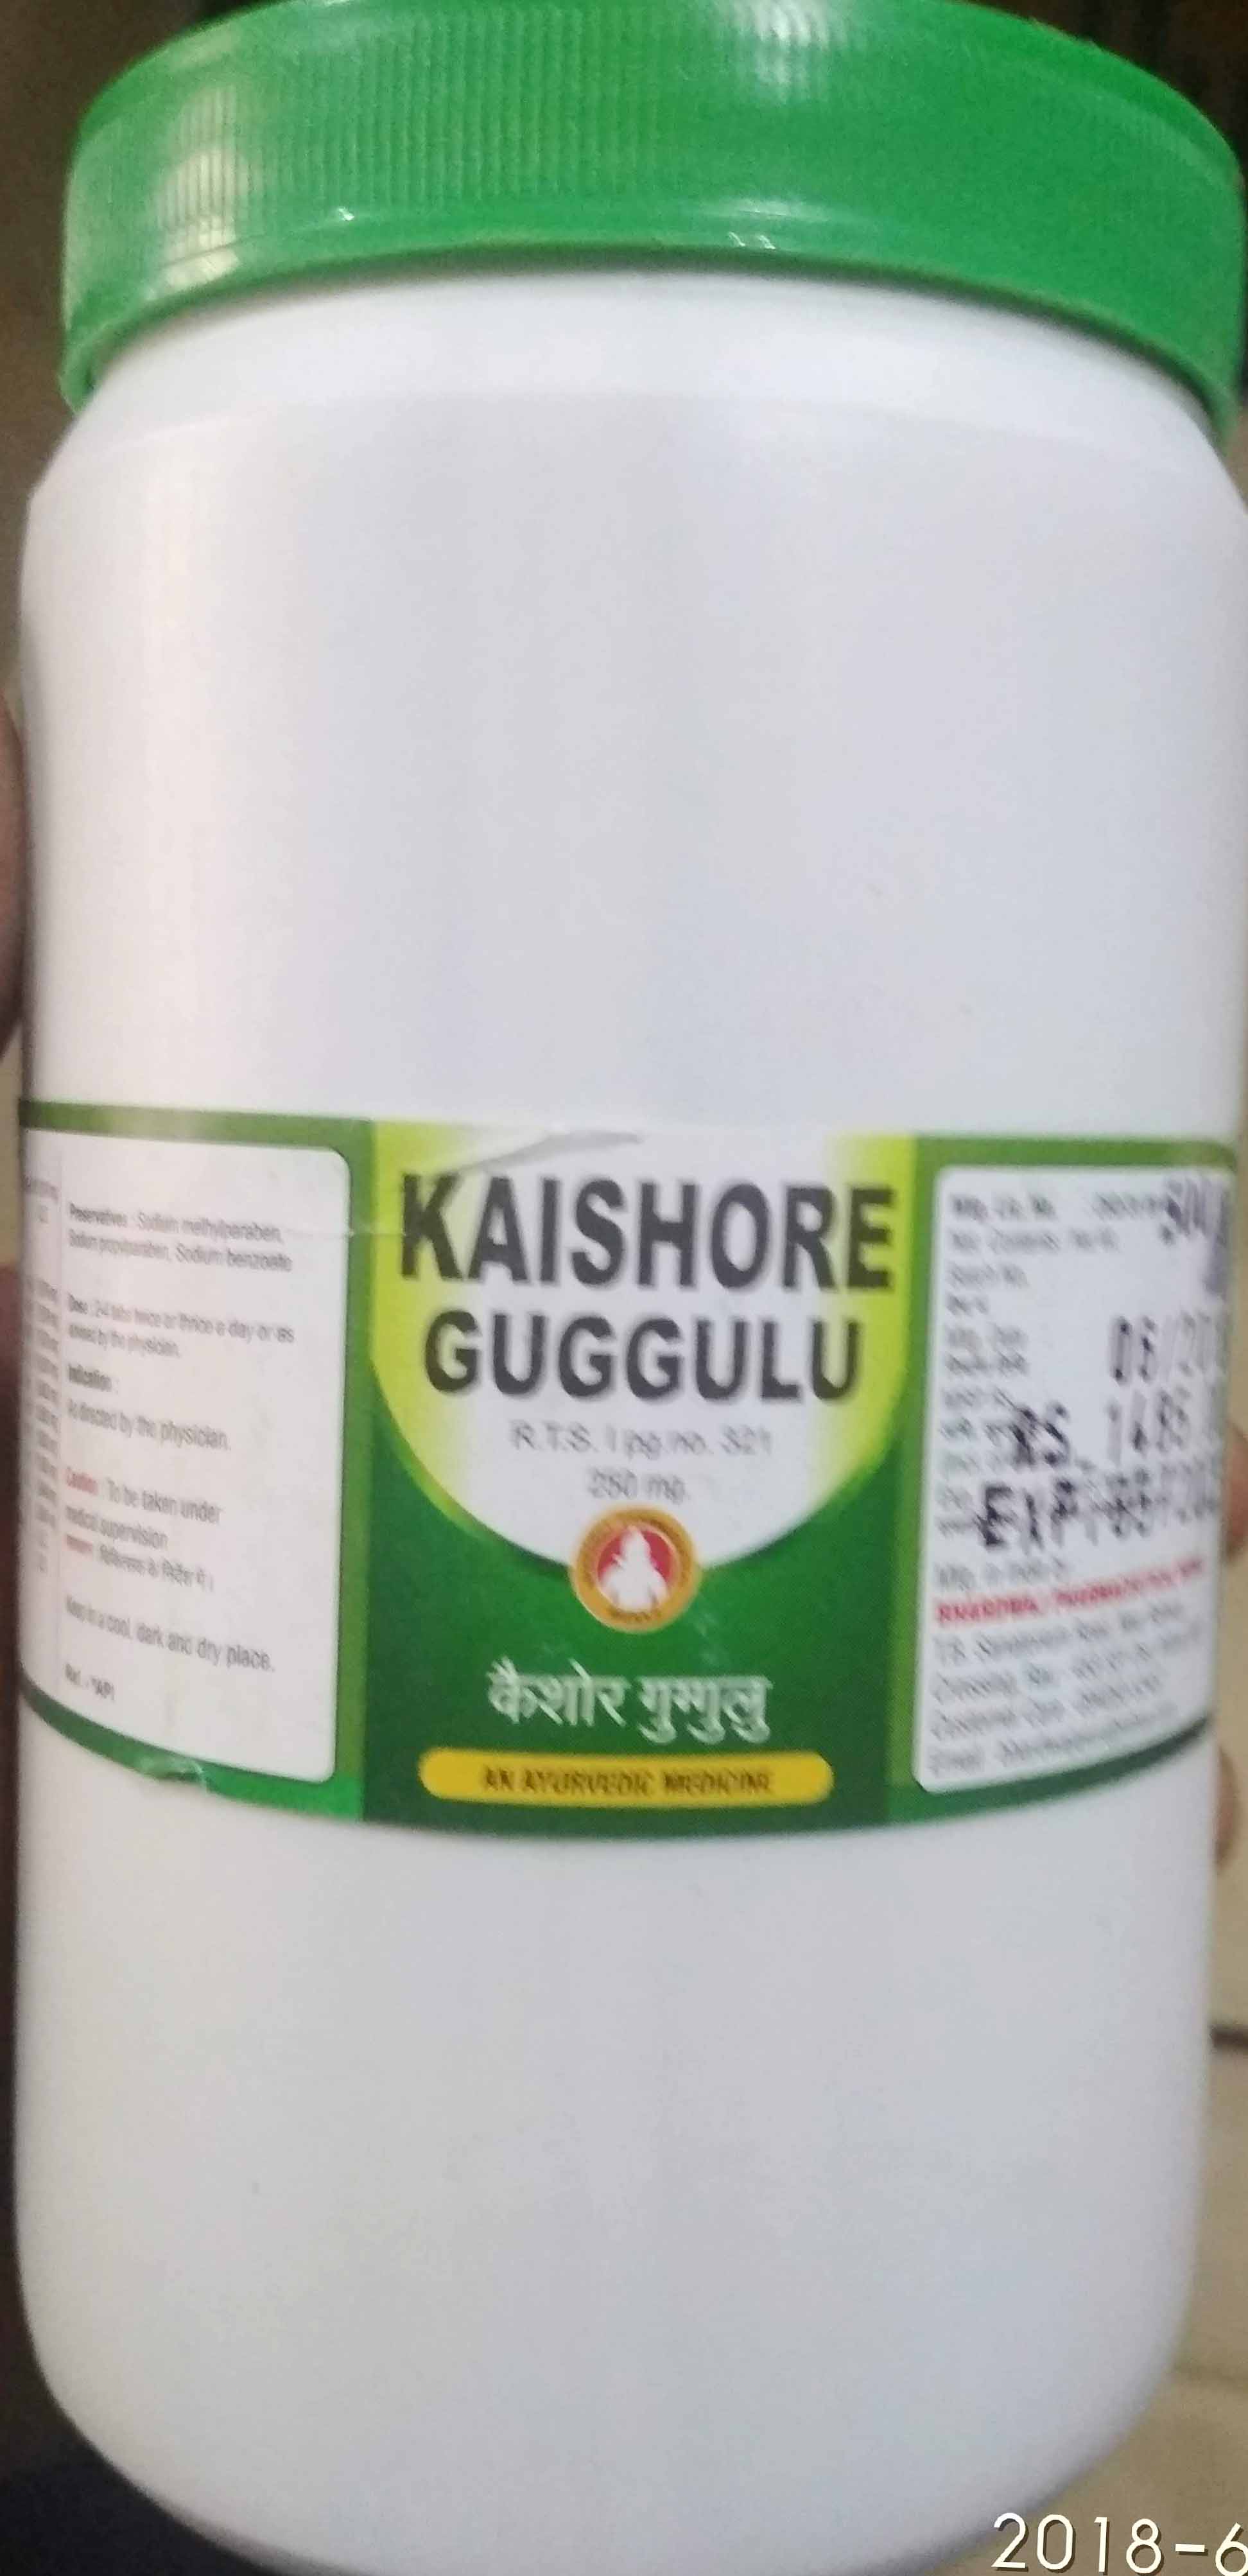 kaishore guggul 1kg upto 20% off free shipping bhardwaj pharmaceuticals indore